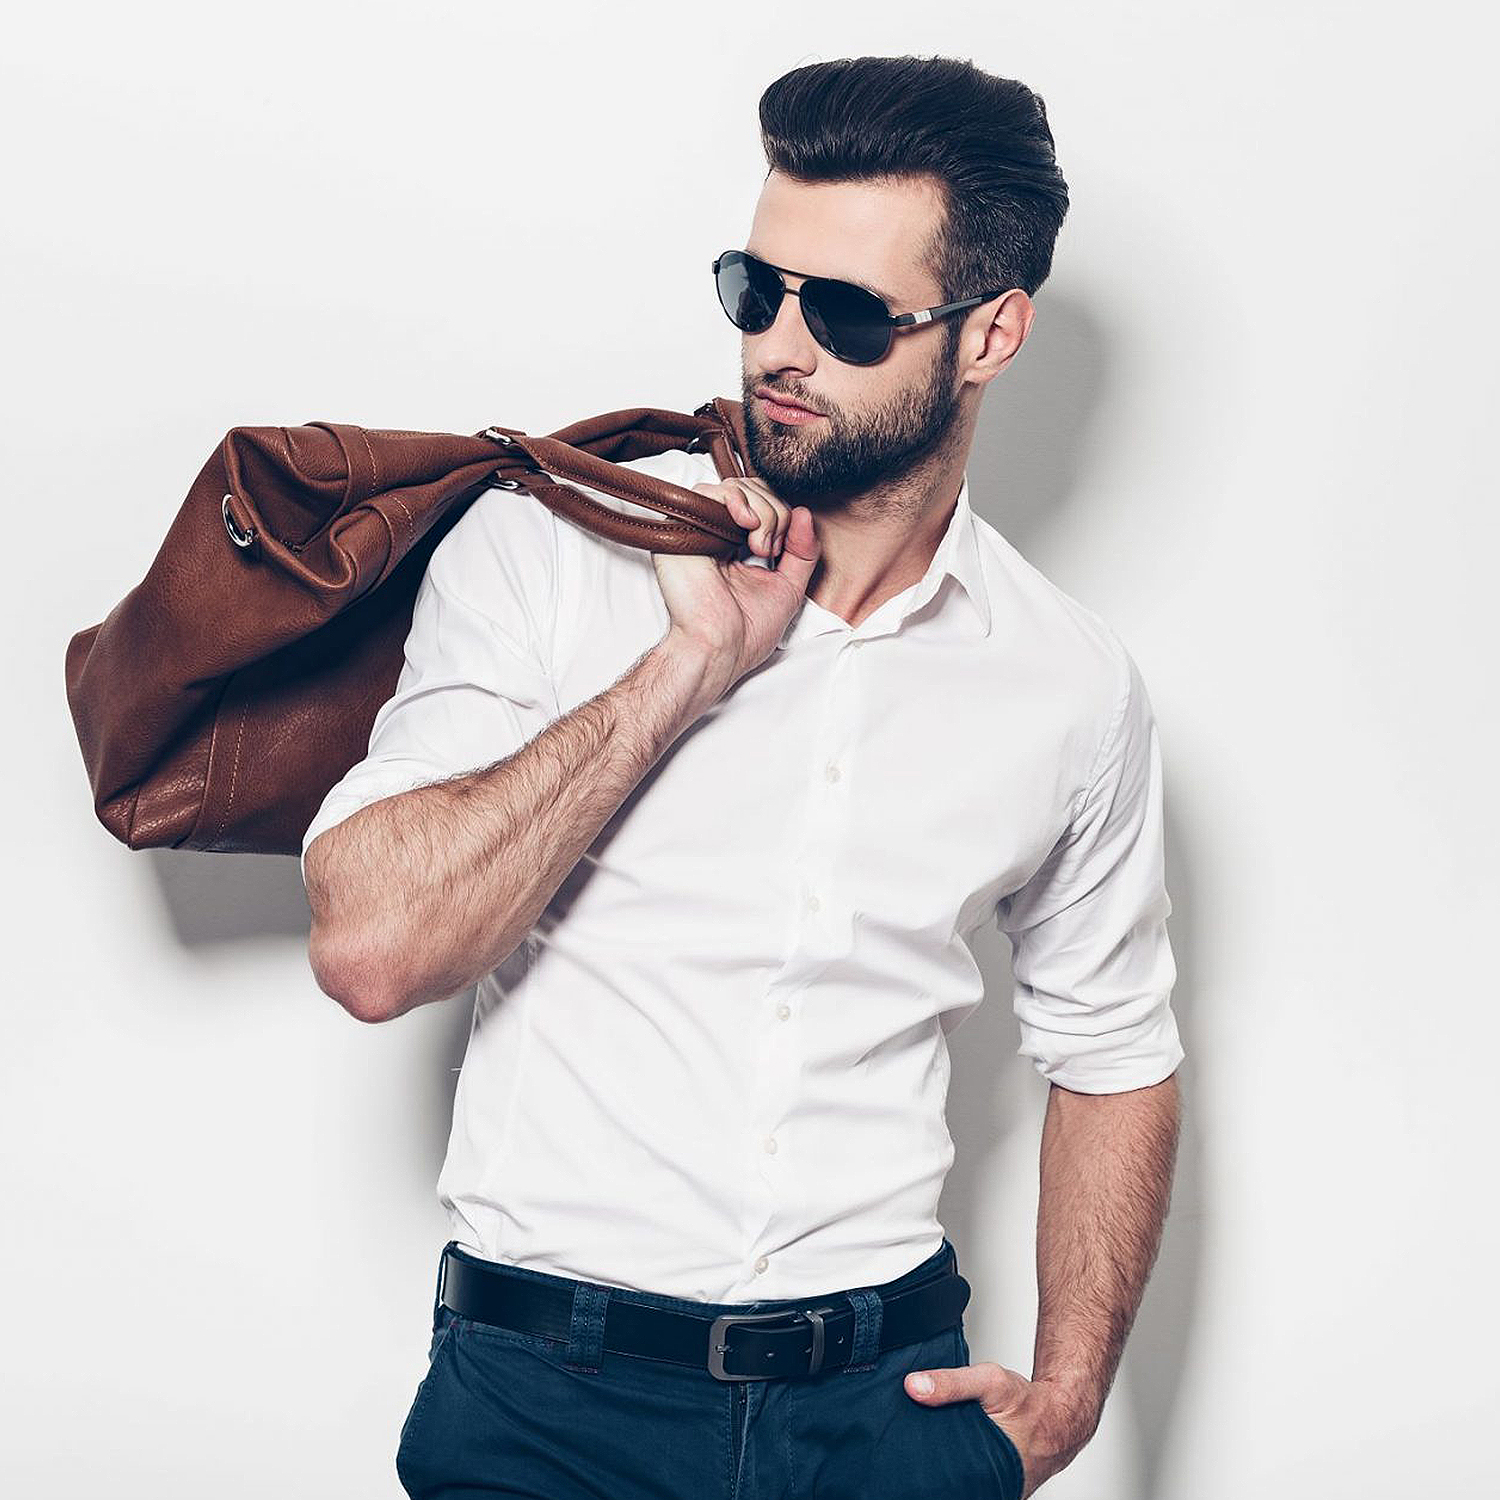 معرفی چند مدل از شیک ترین کیف های مردانه